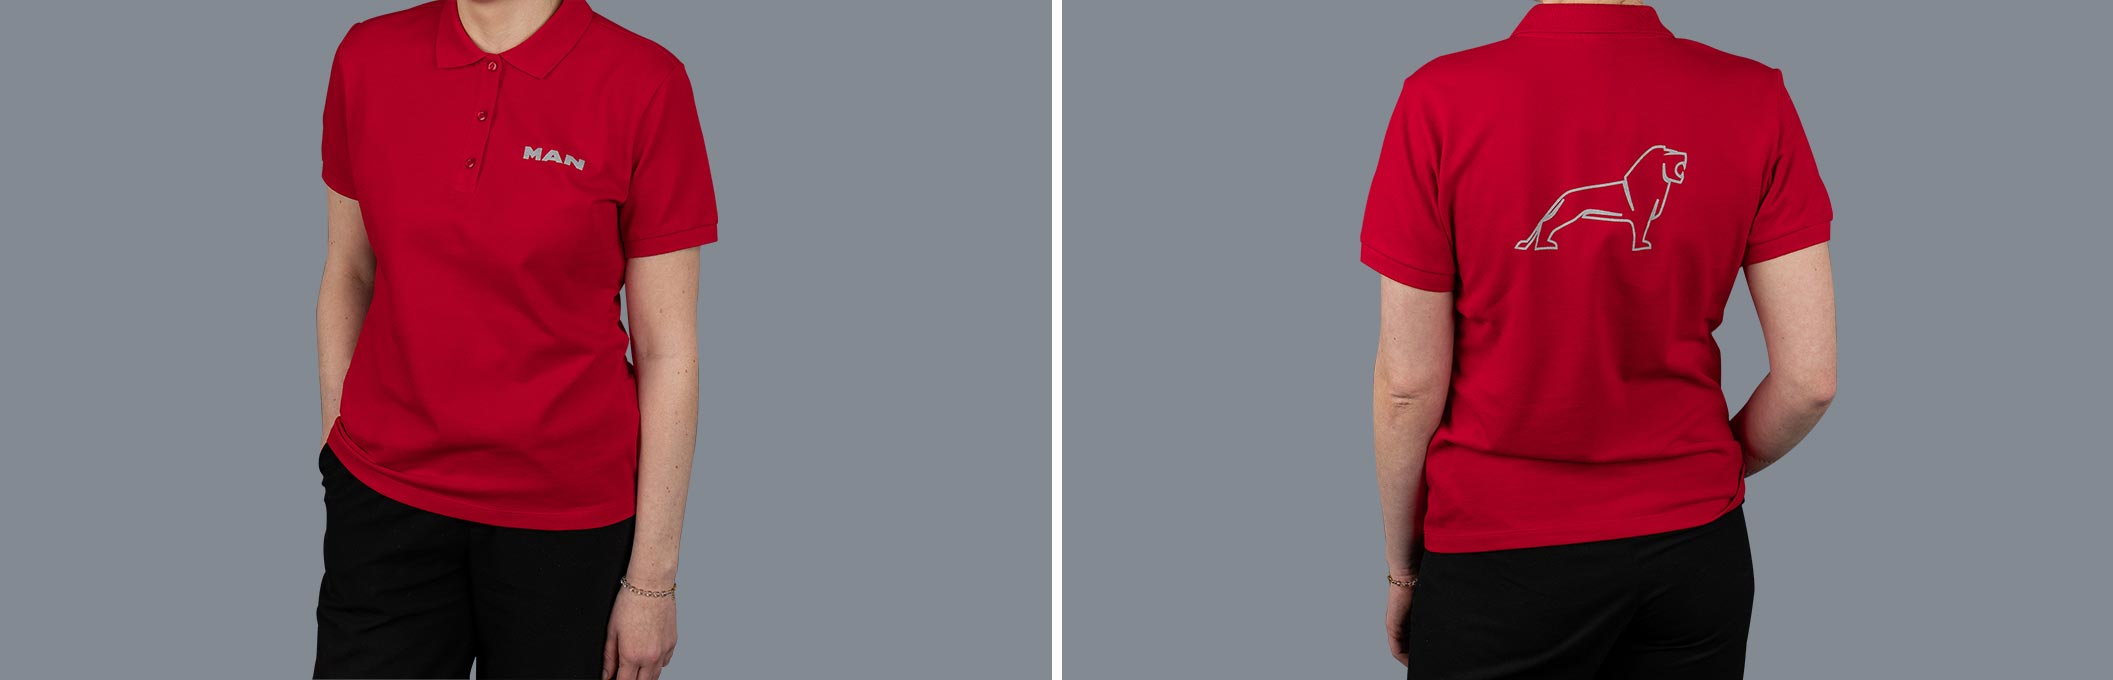 Vorder- und Rückansicht eines roten Damen MAN Poloshirts aus der Essential Kollektion mit Logo Print auf dem Ärmel und dem Wort "MAN" auf der Vorderseite